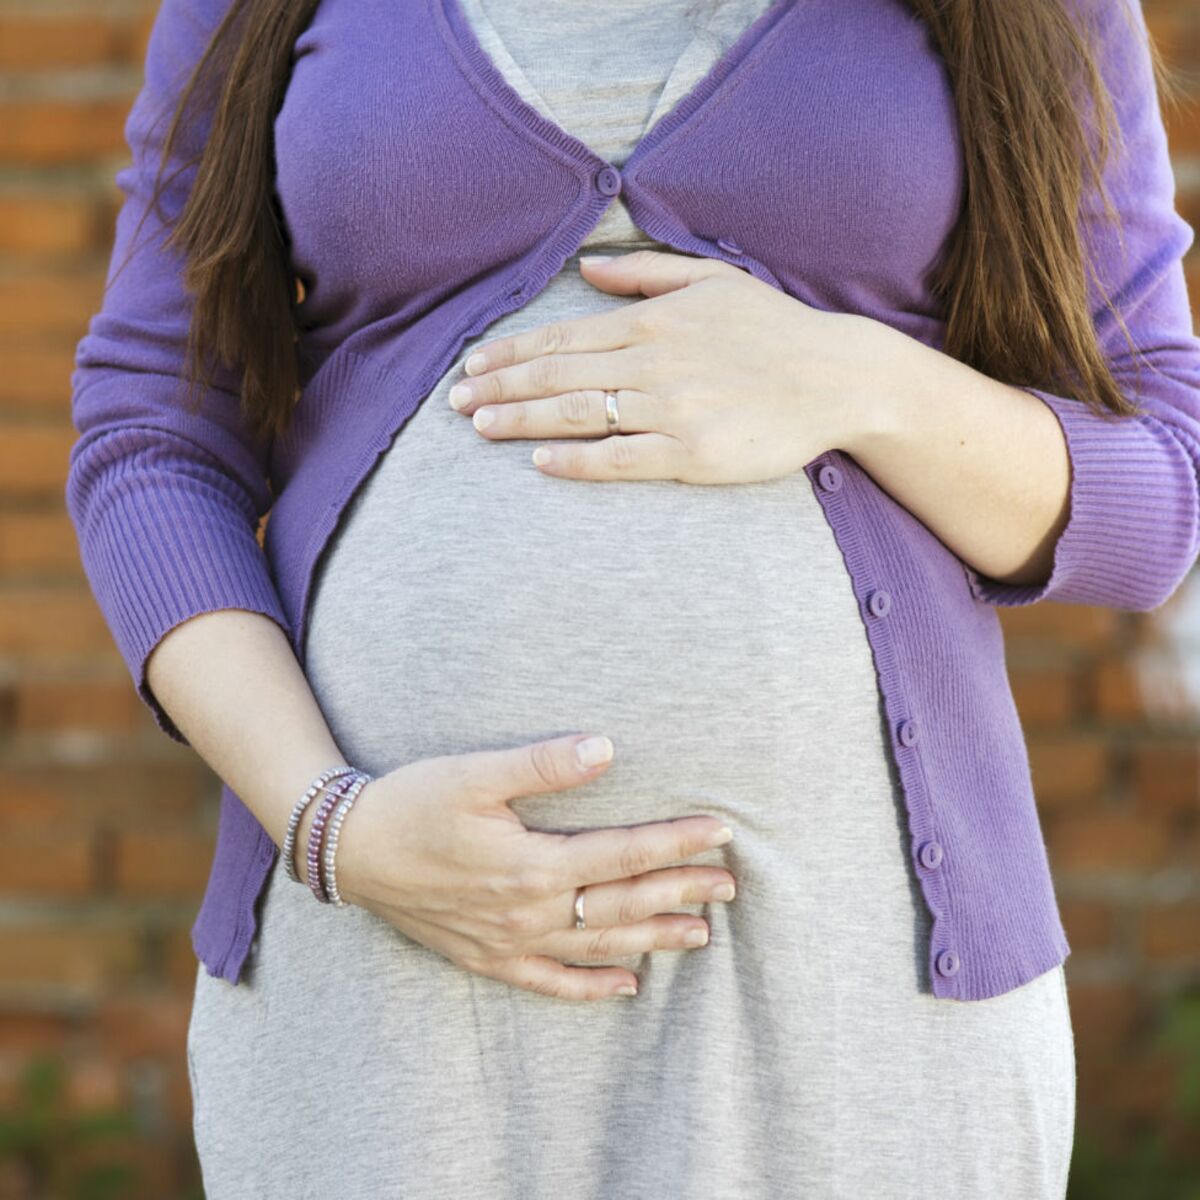 recherche streptocoque femme enceinte